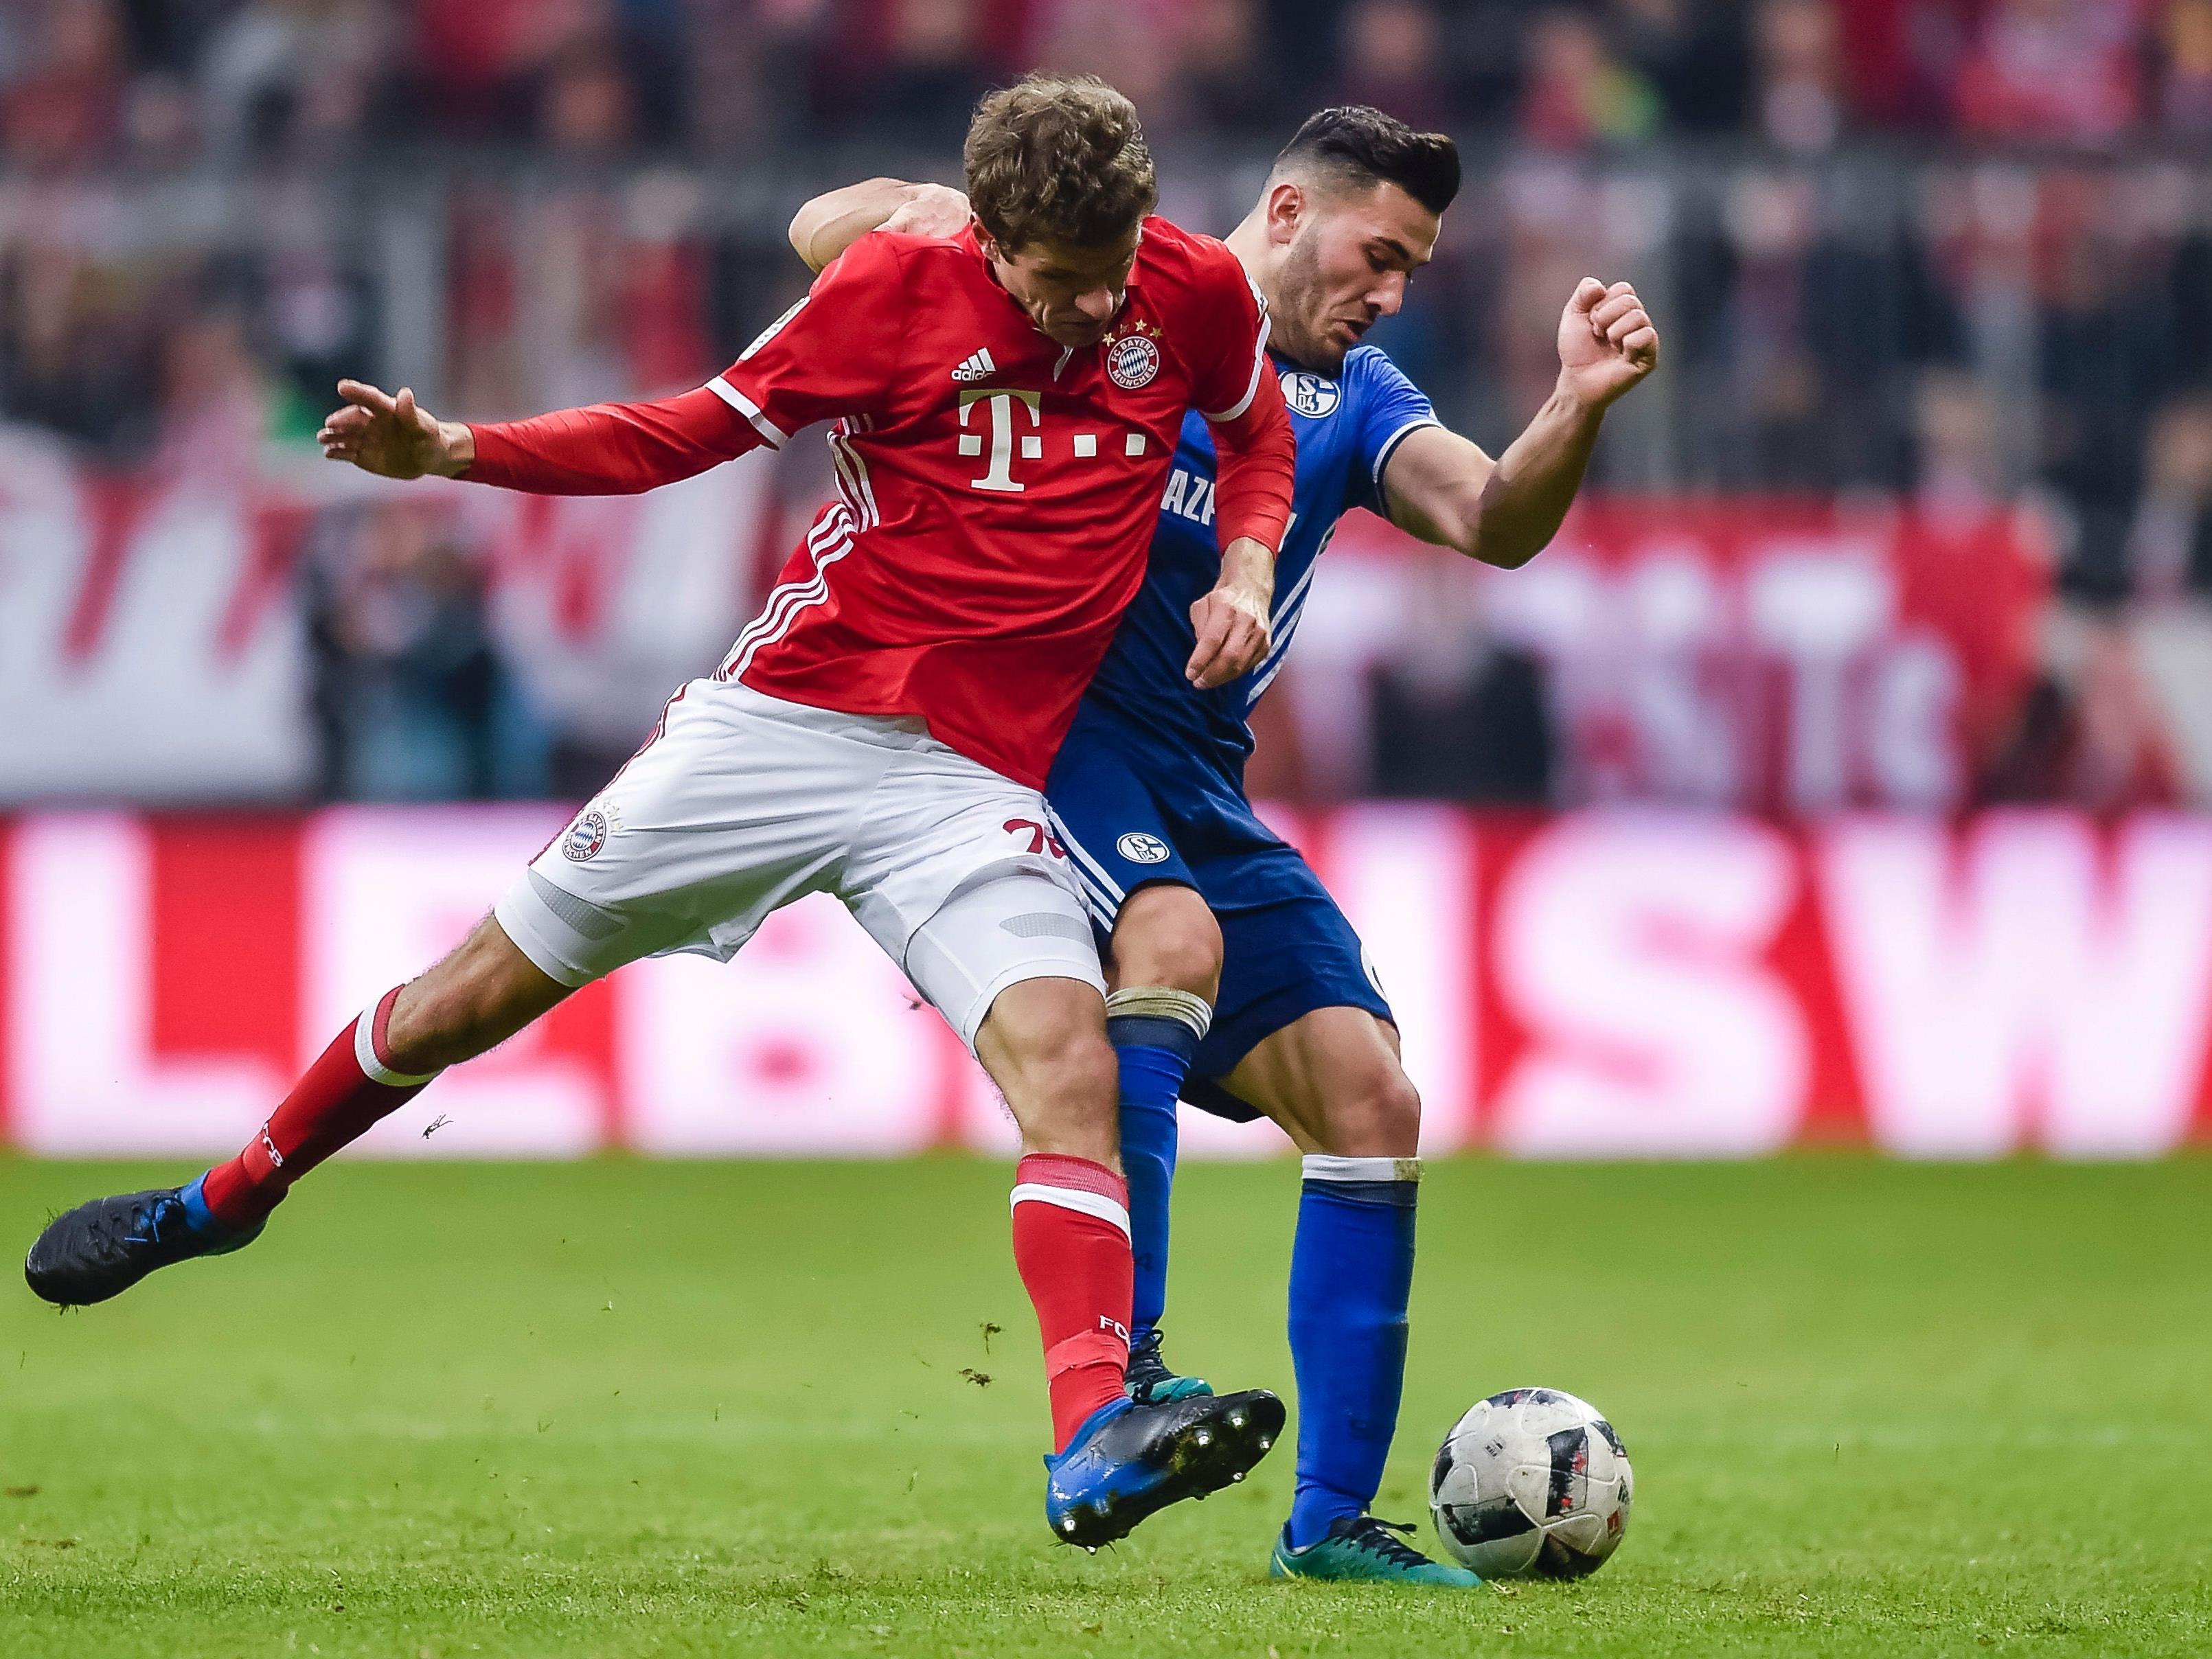 Bayern München empfängt im DFB-Pokal-Viertelfinale Schalke 04.